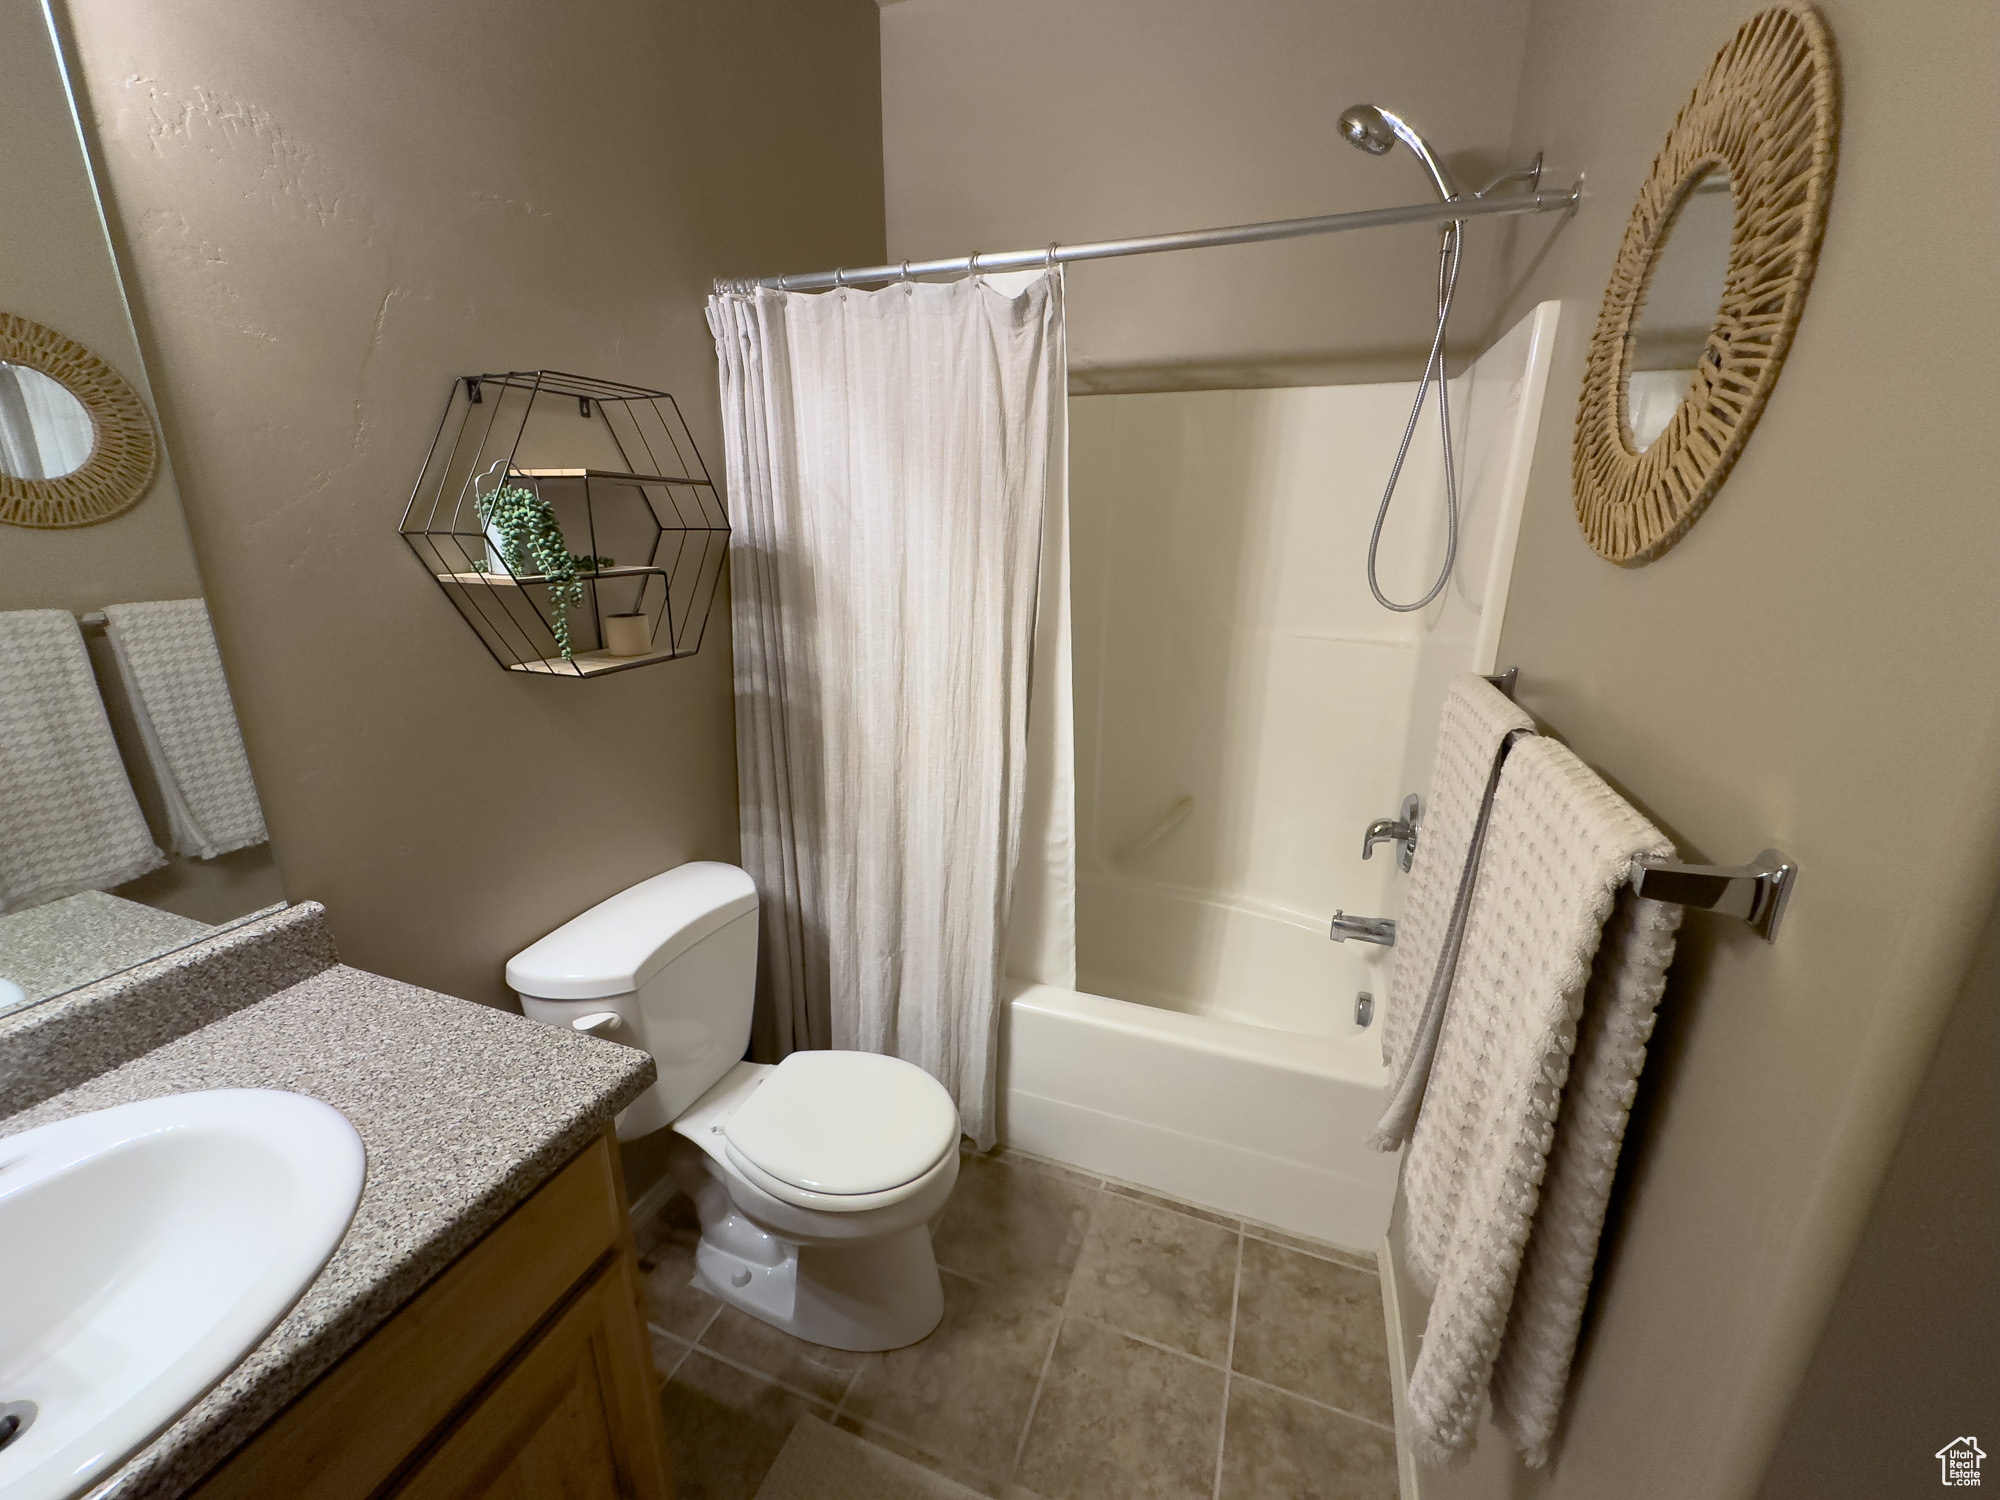 8484 S IVY GABLE W, West Jordan, Utah 84081, 2 Bedrooms Bedrooms, 9 Rooms Rooms,2 BathroomsBathrooms,Residential,For sale,IVY GABLE,1995985